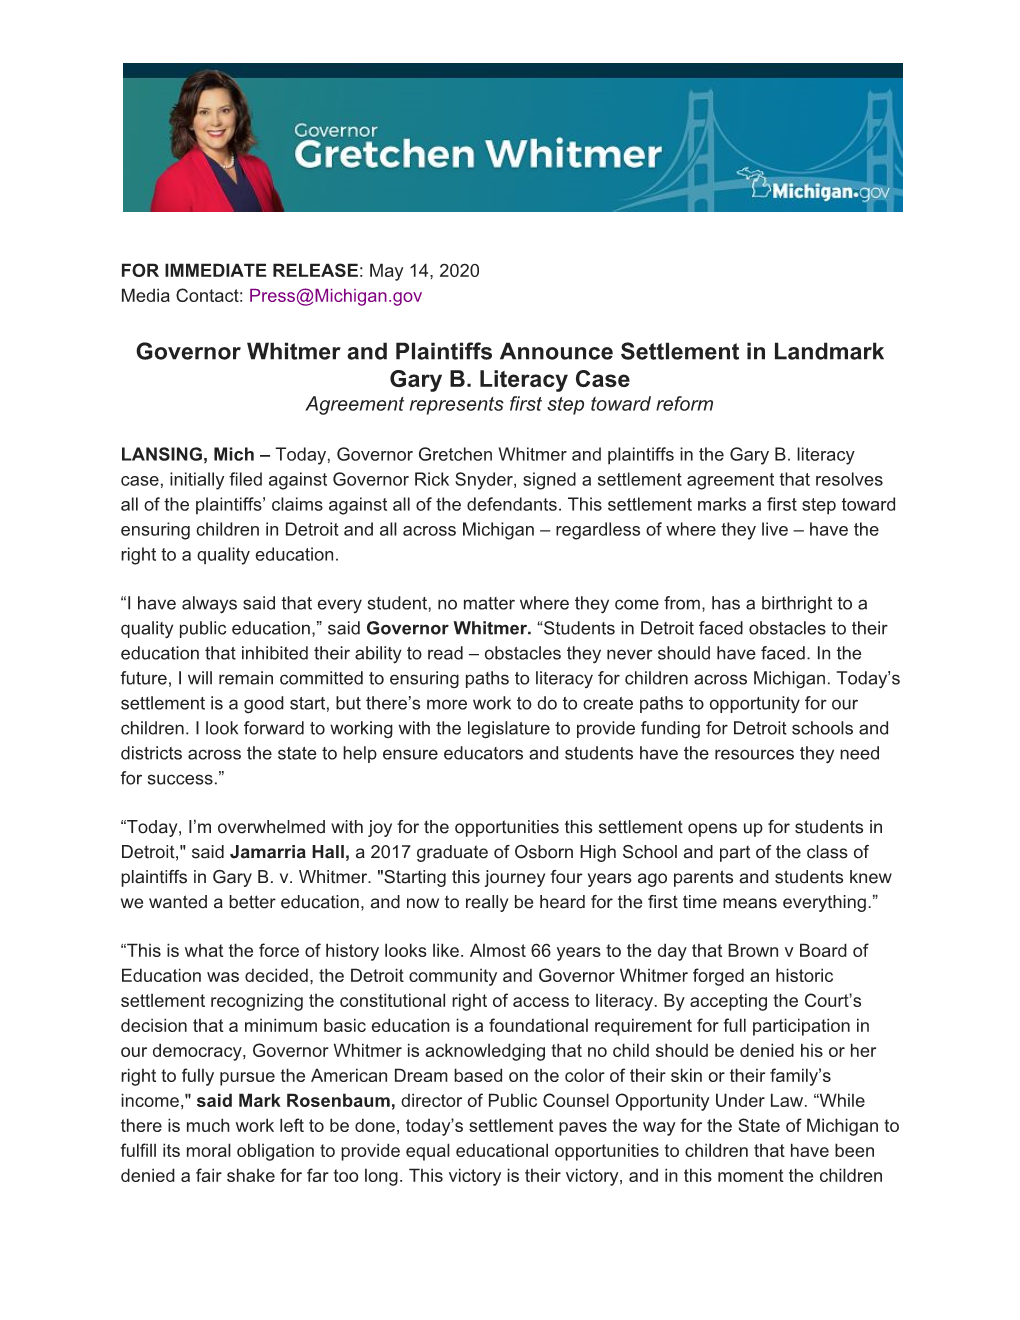 Governor Whitmer and Plaintiffs Announce Settlement in Landmark Gary B